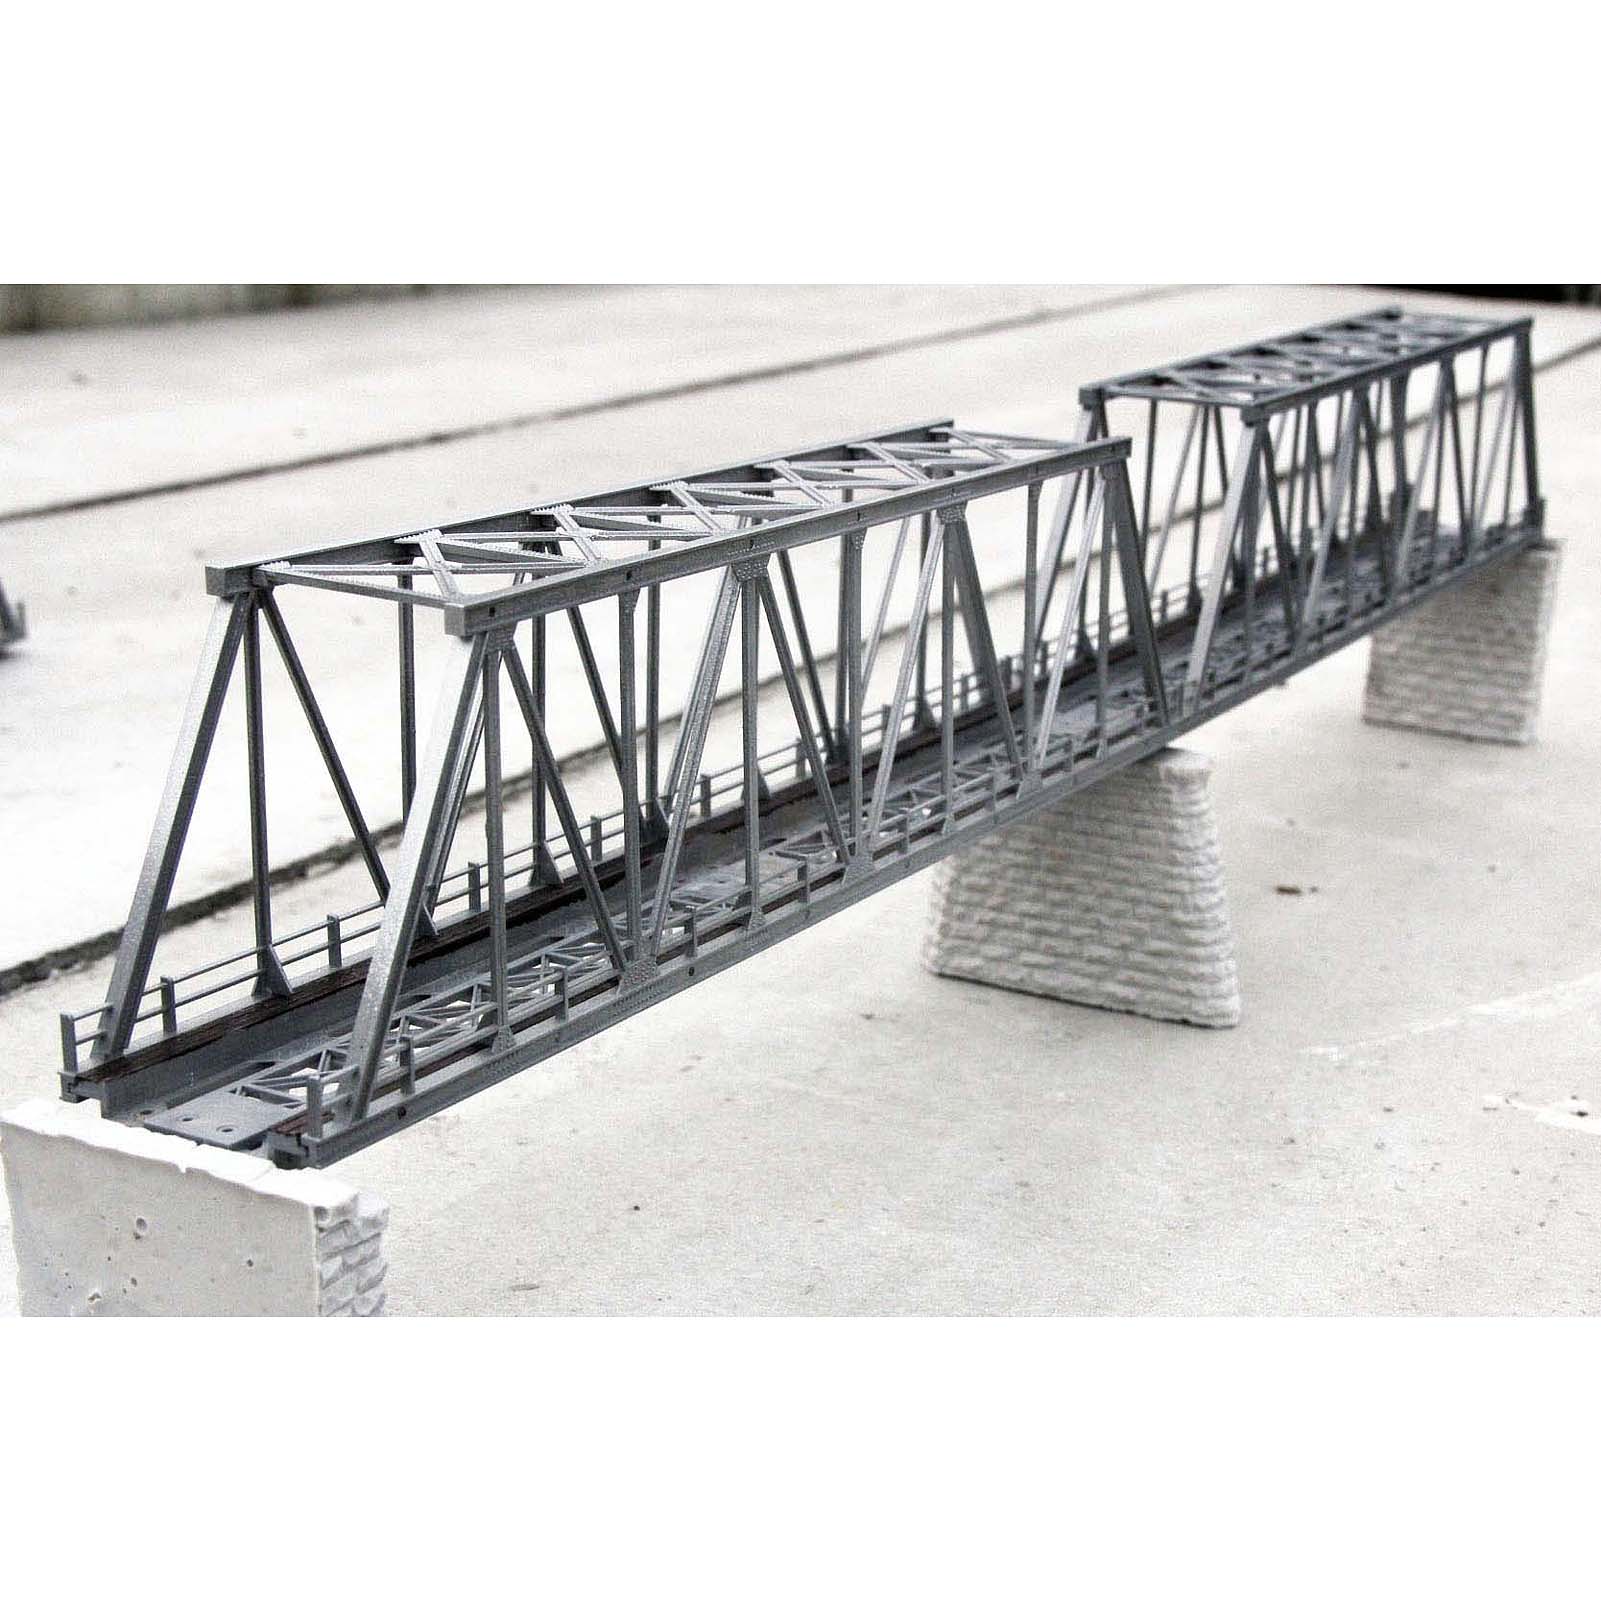 QL009 HO Scale 1:87 Model Truss Bridge Kit for Model Track Model Trains